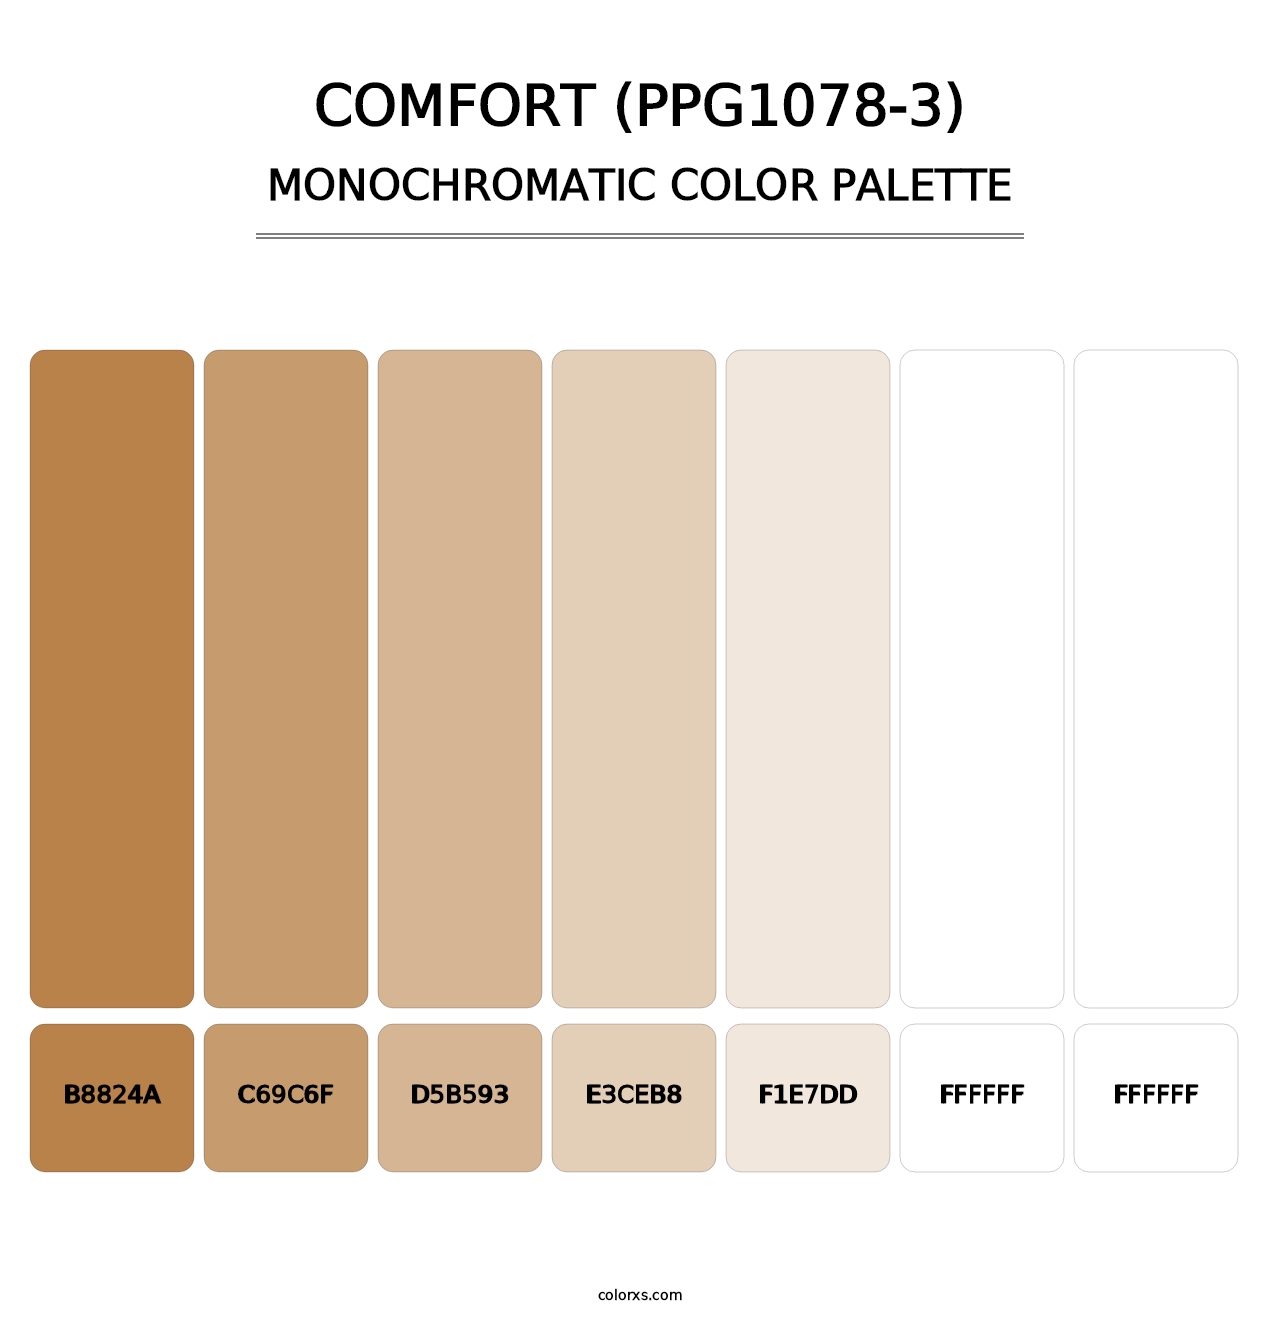 Comfort (PPG1078-3) - Monochromatic Color Palette